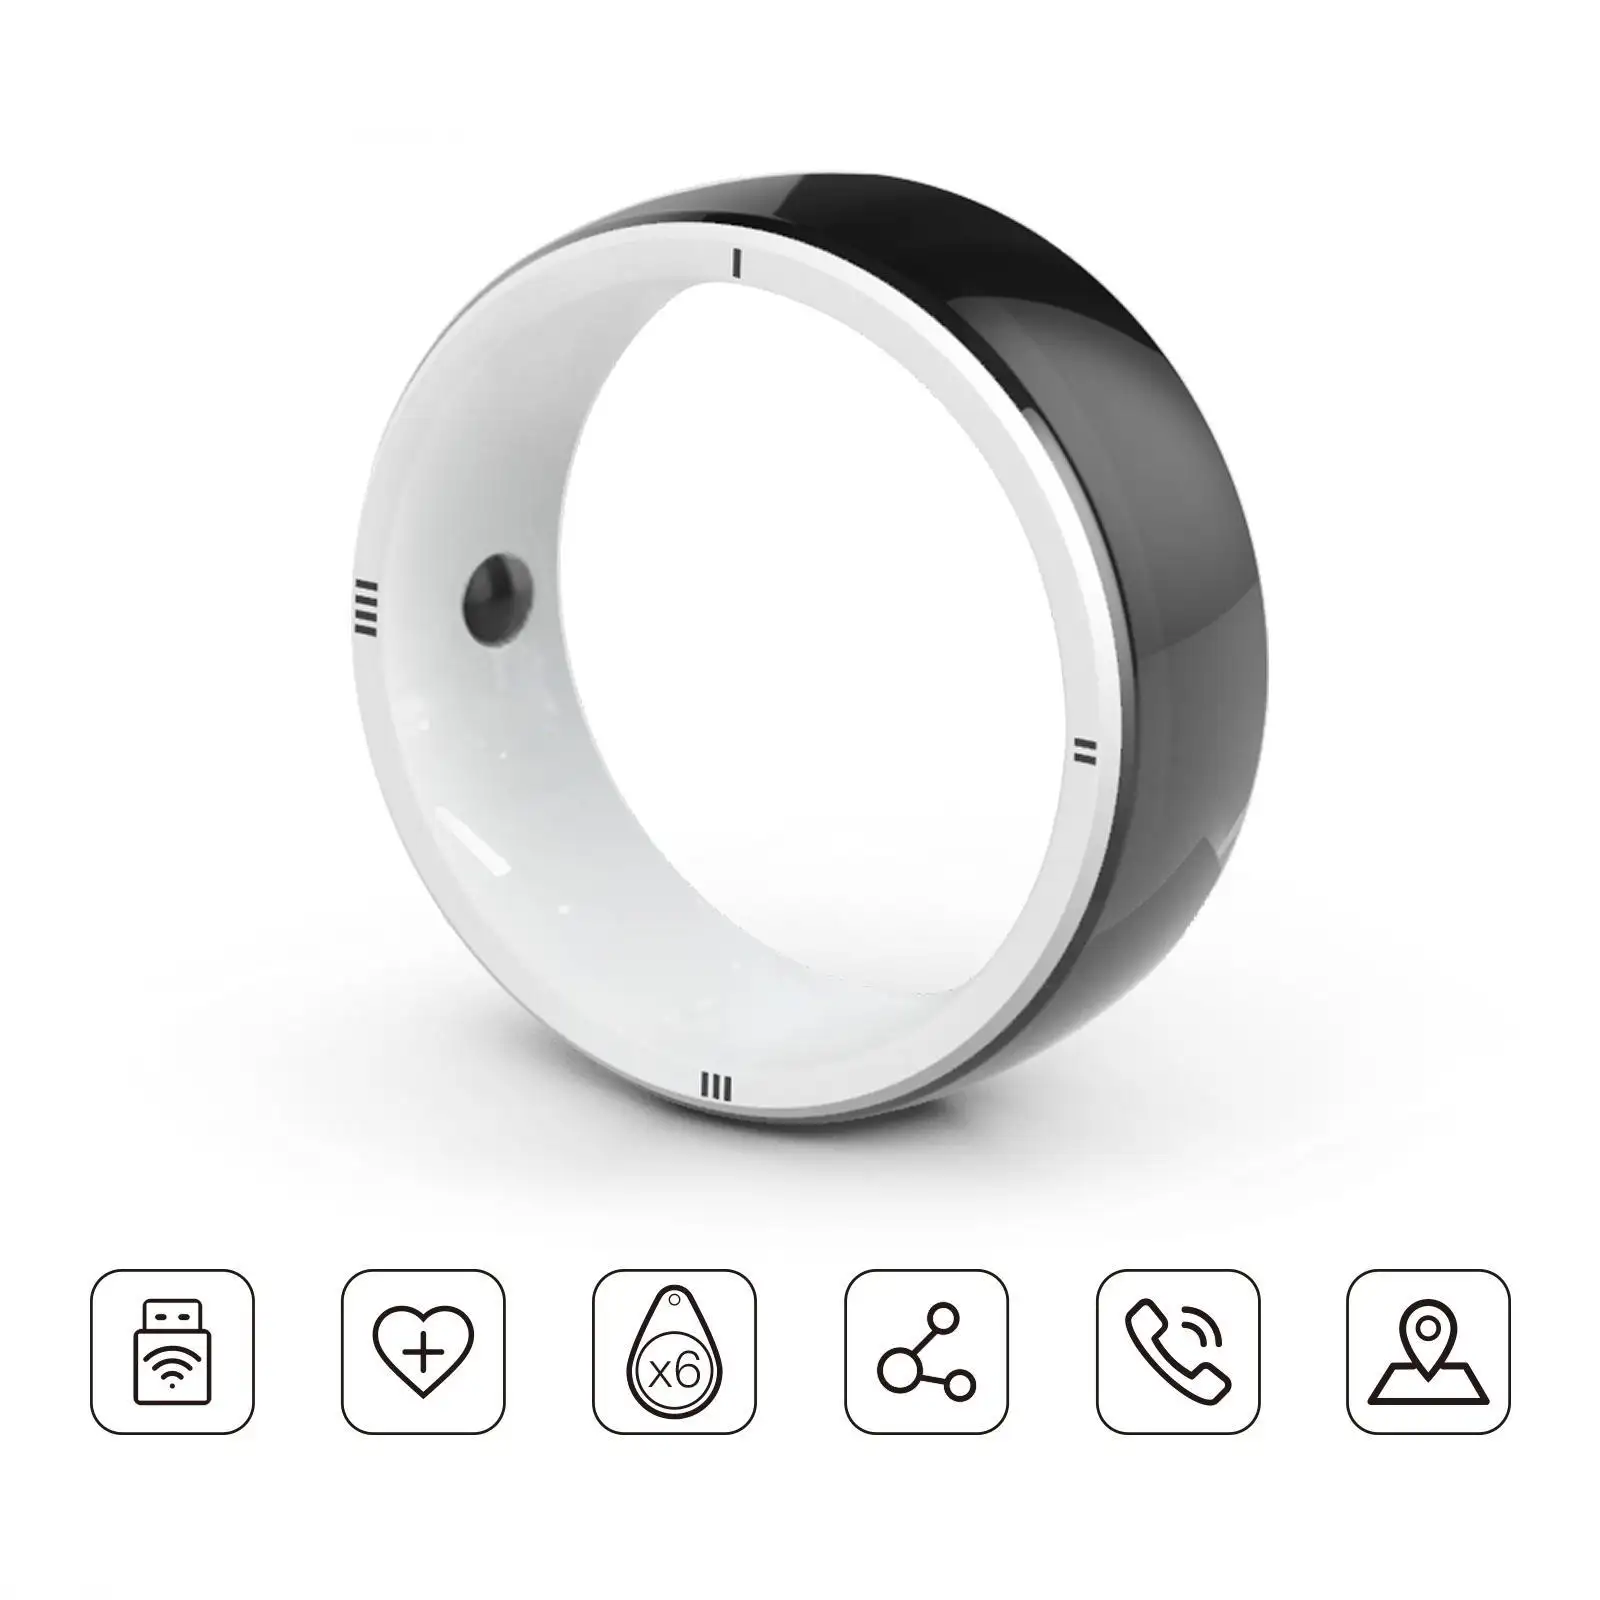 JAKCOM R5 Smart Ring neuer Smart Ring Superwert als kanger emow Starterset p56k 30000 mah a3 mobiler 52mm-Kreisförmiger Polarisator